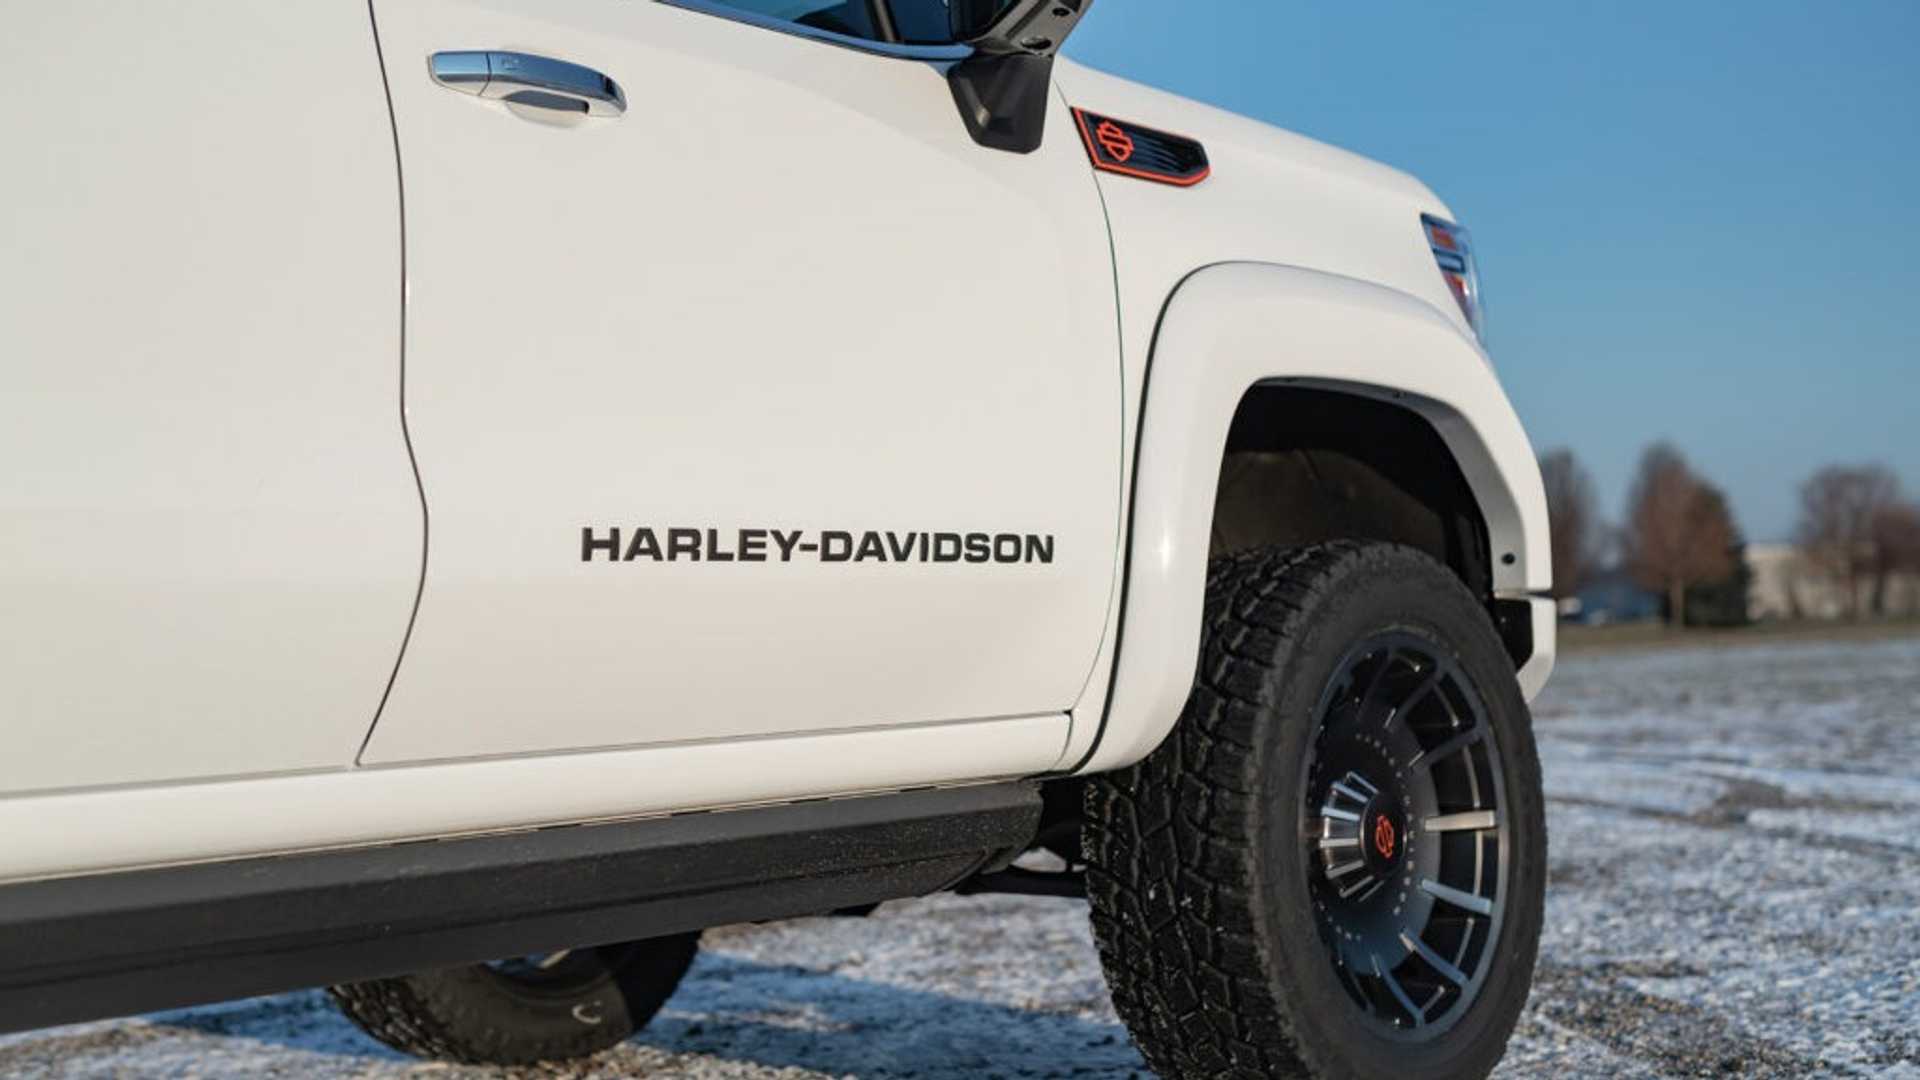 2020 harley davidson gmc sierra 16 - این یک پیک آپ جدید هارلی دیویدسون 2020 است، نه یک فورد